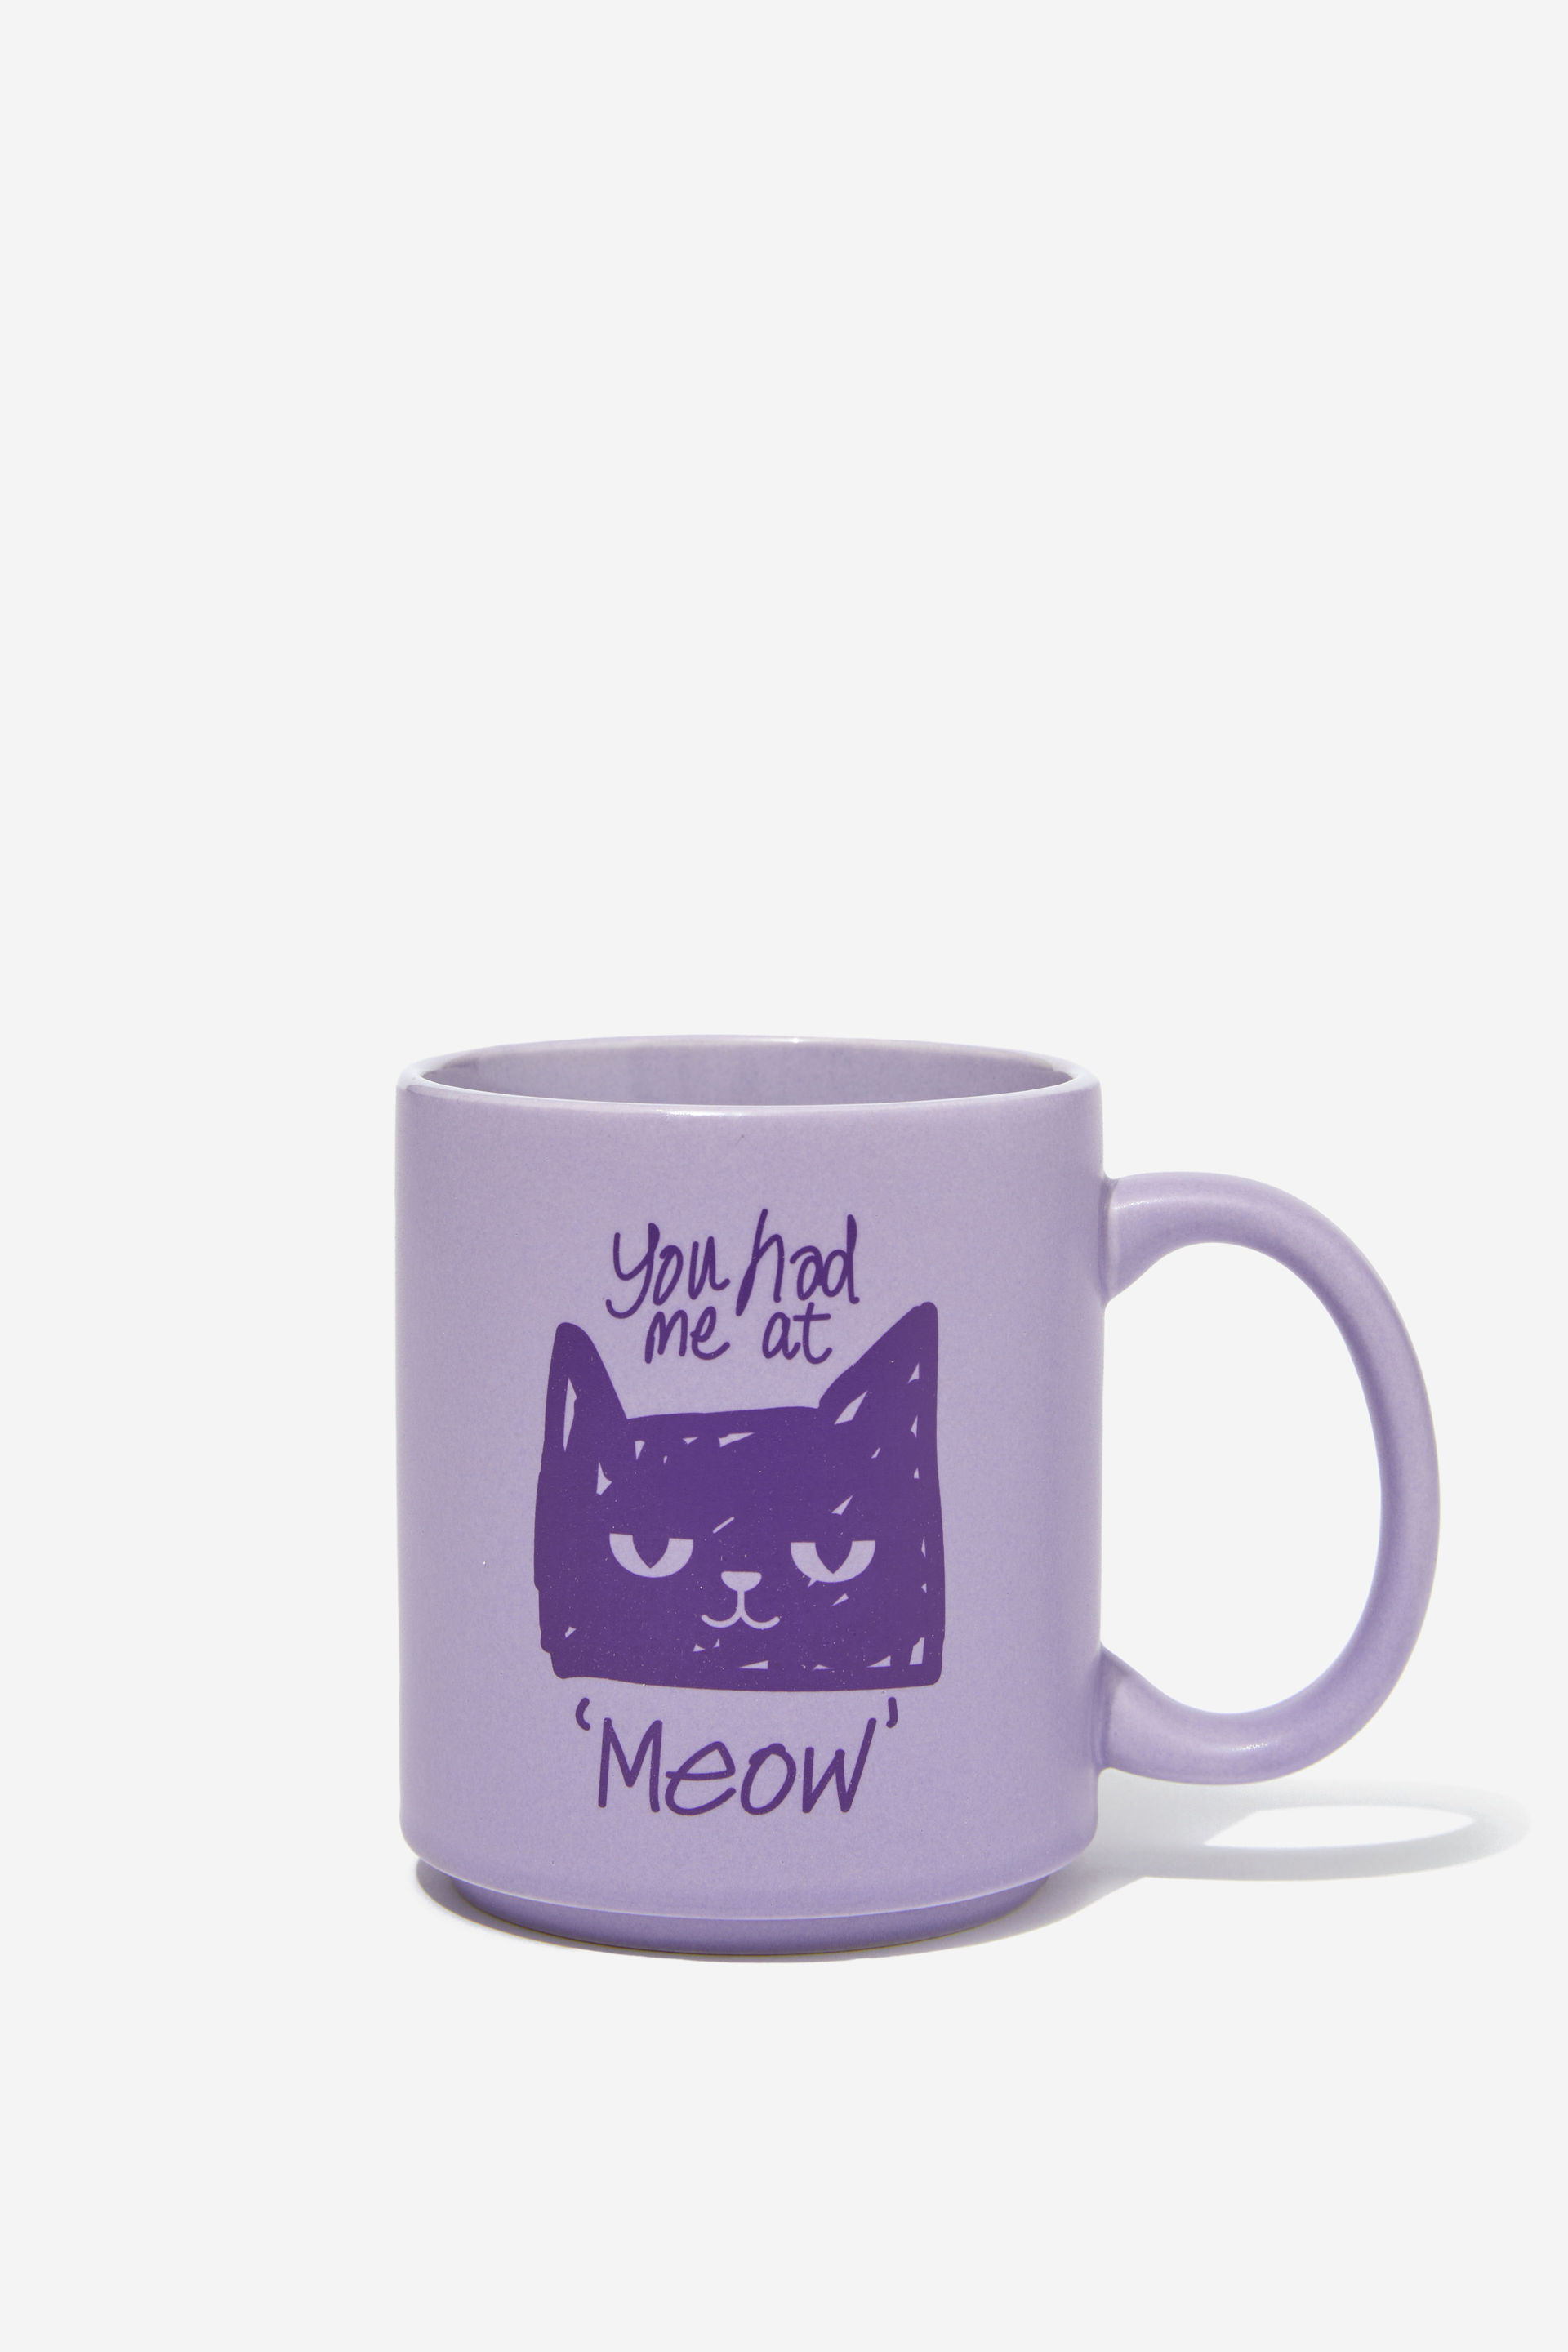 Typo - Daily Mug - Had me at meow